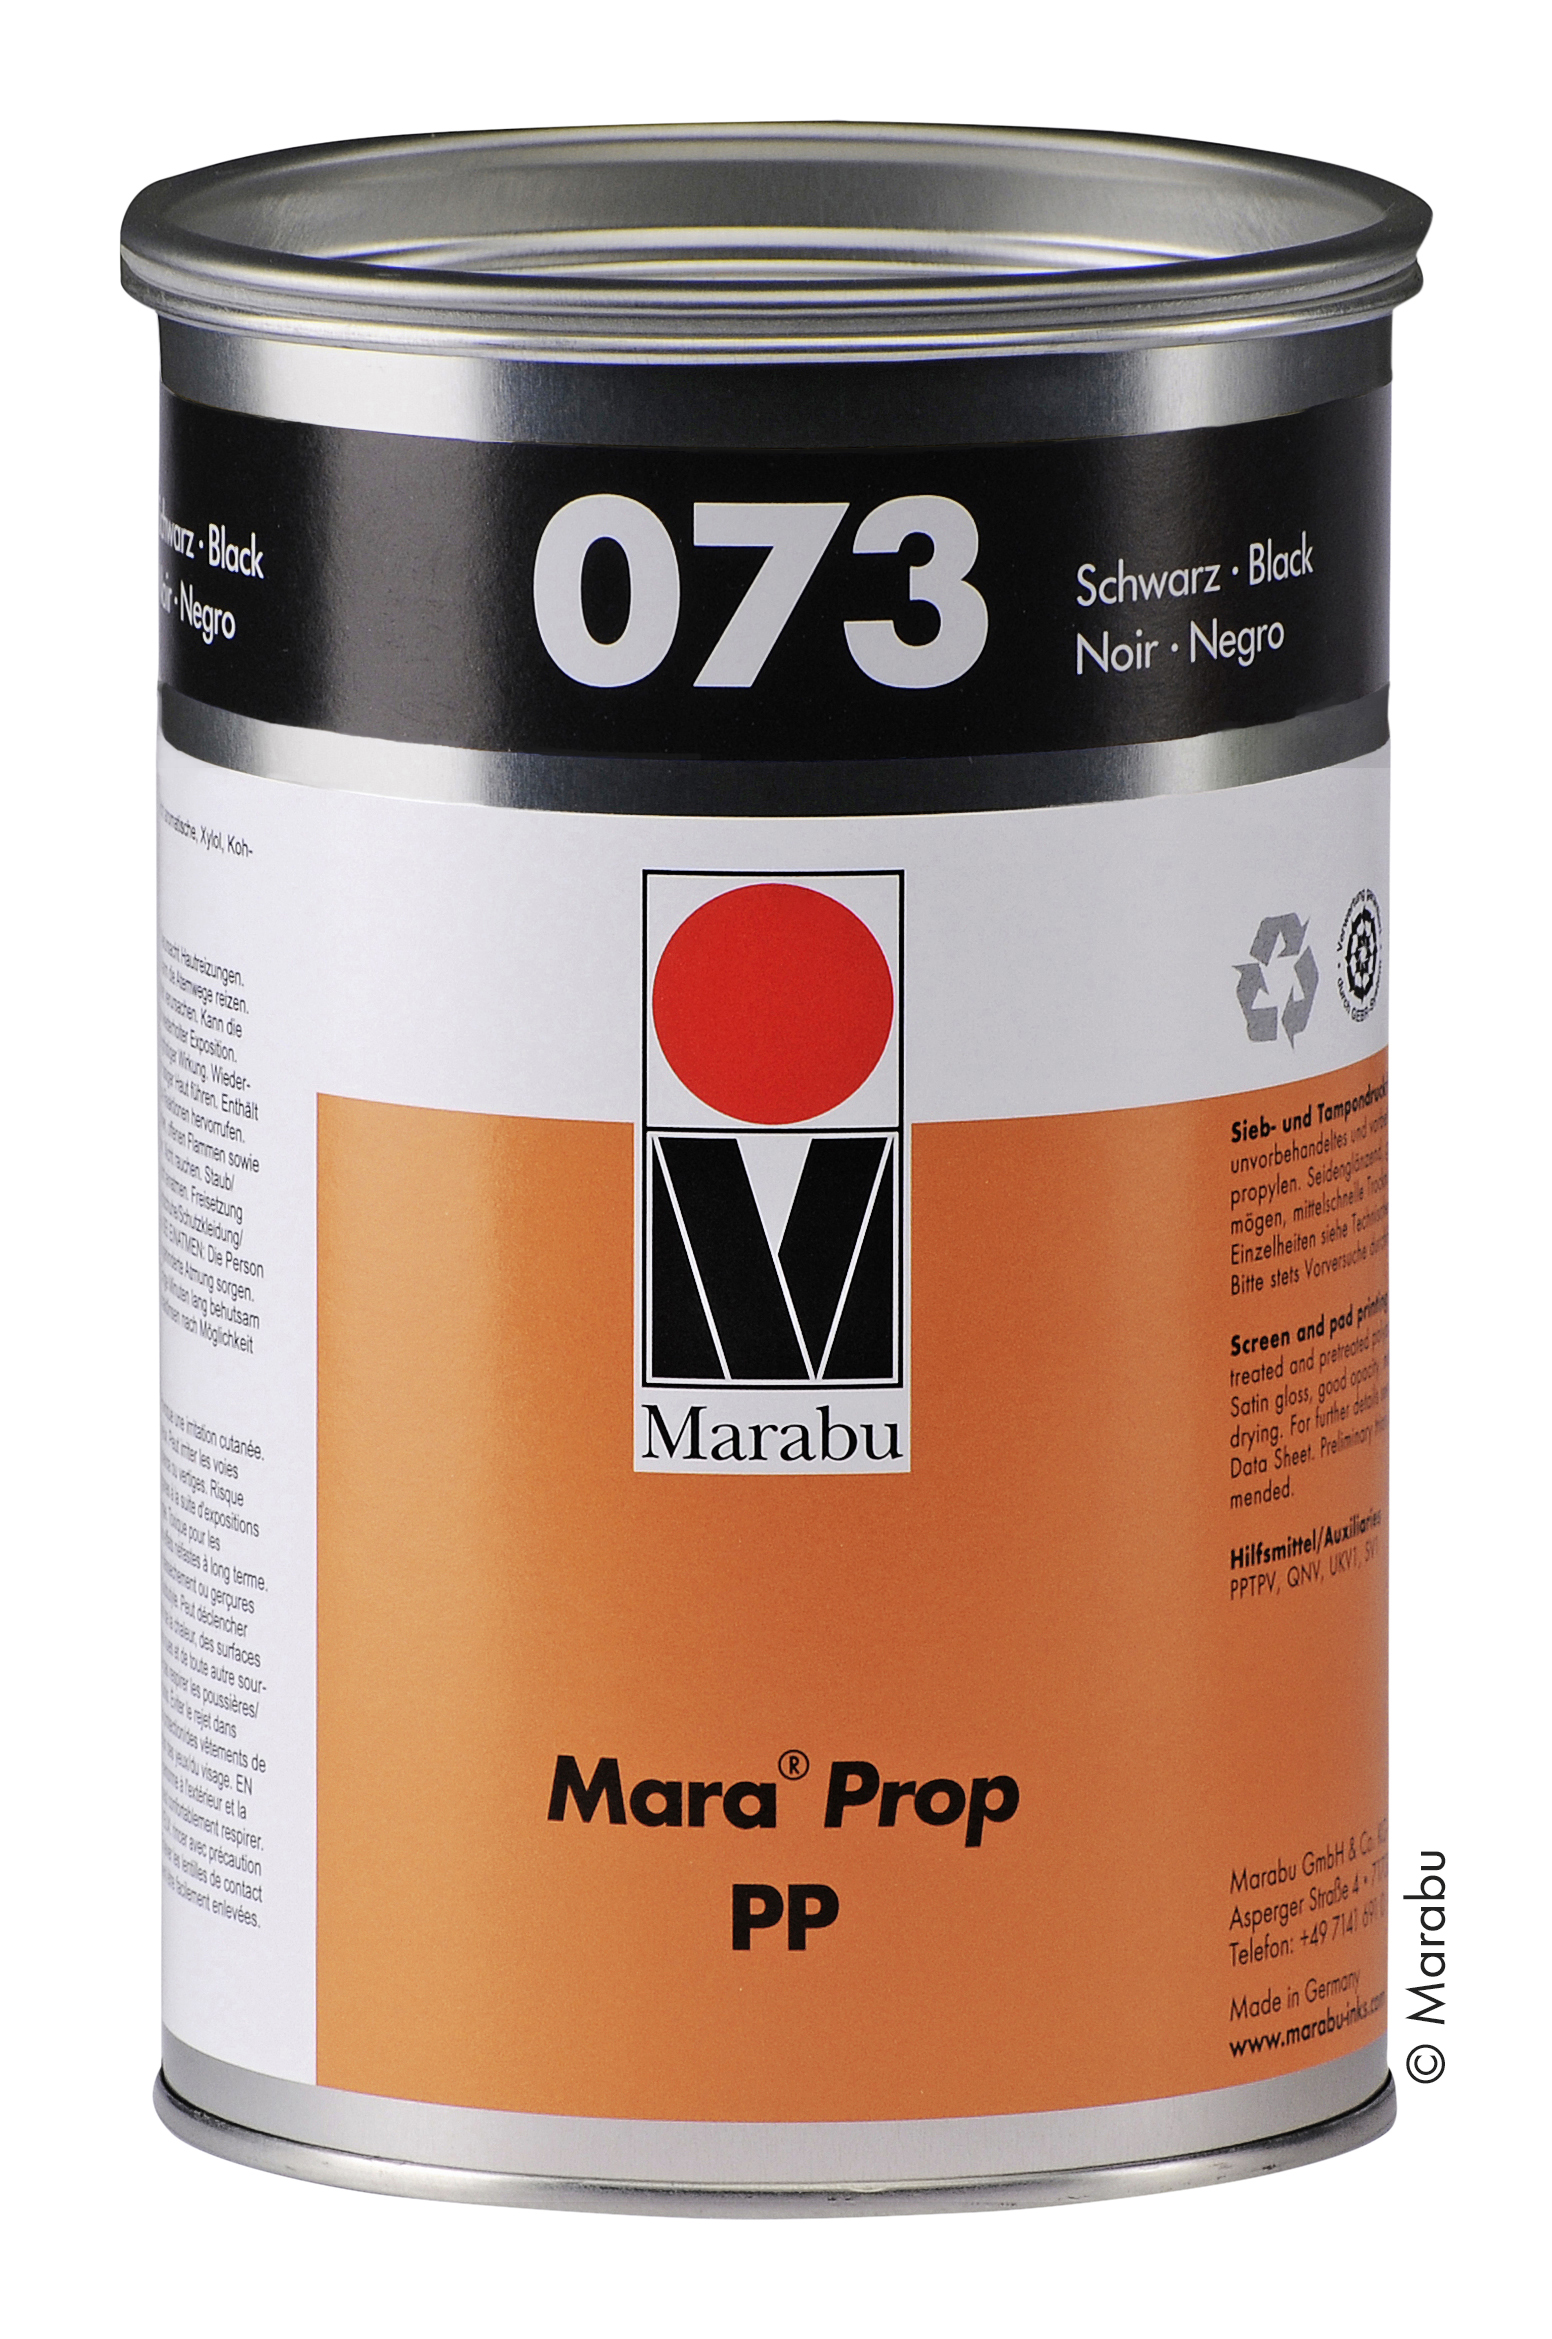 Které barvy Marabu splňují přísné standardy lékařského průmyslu?